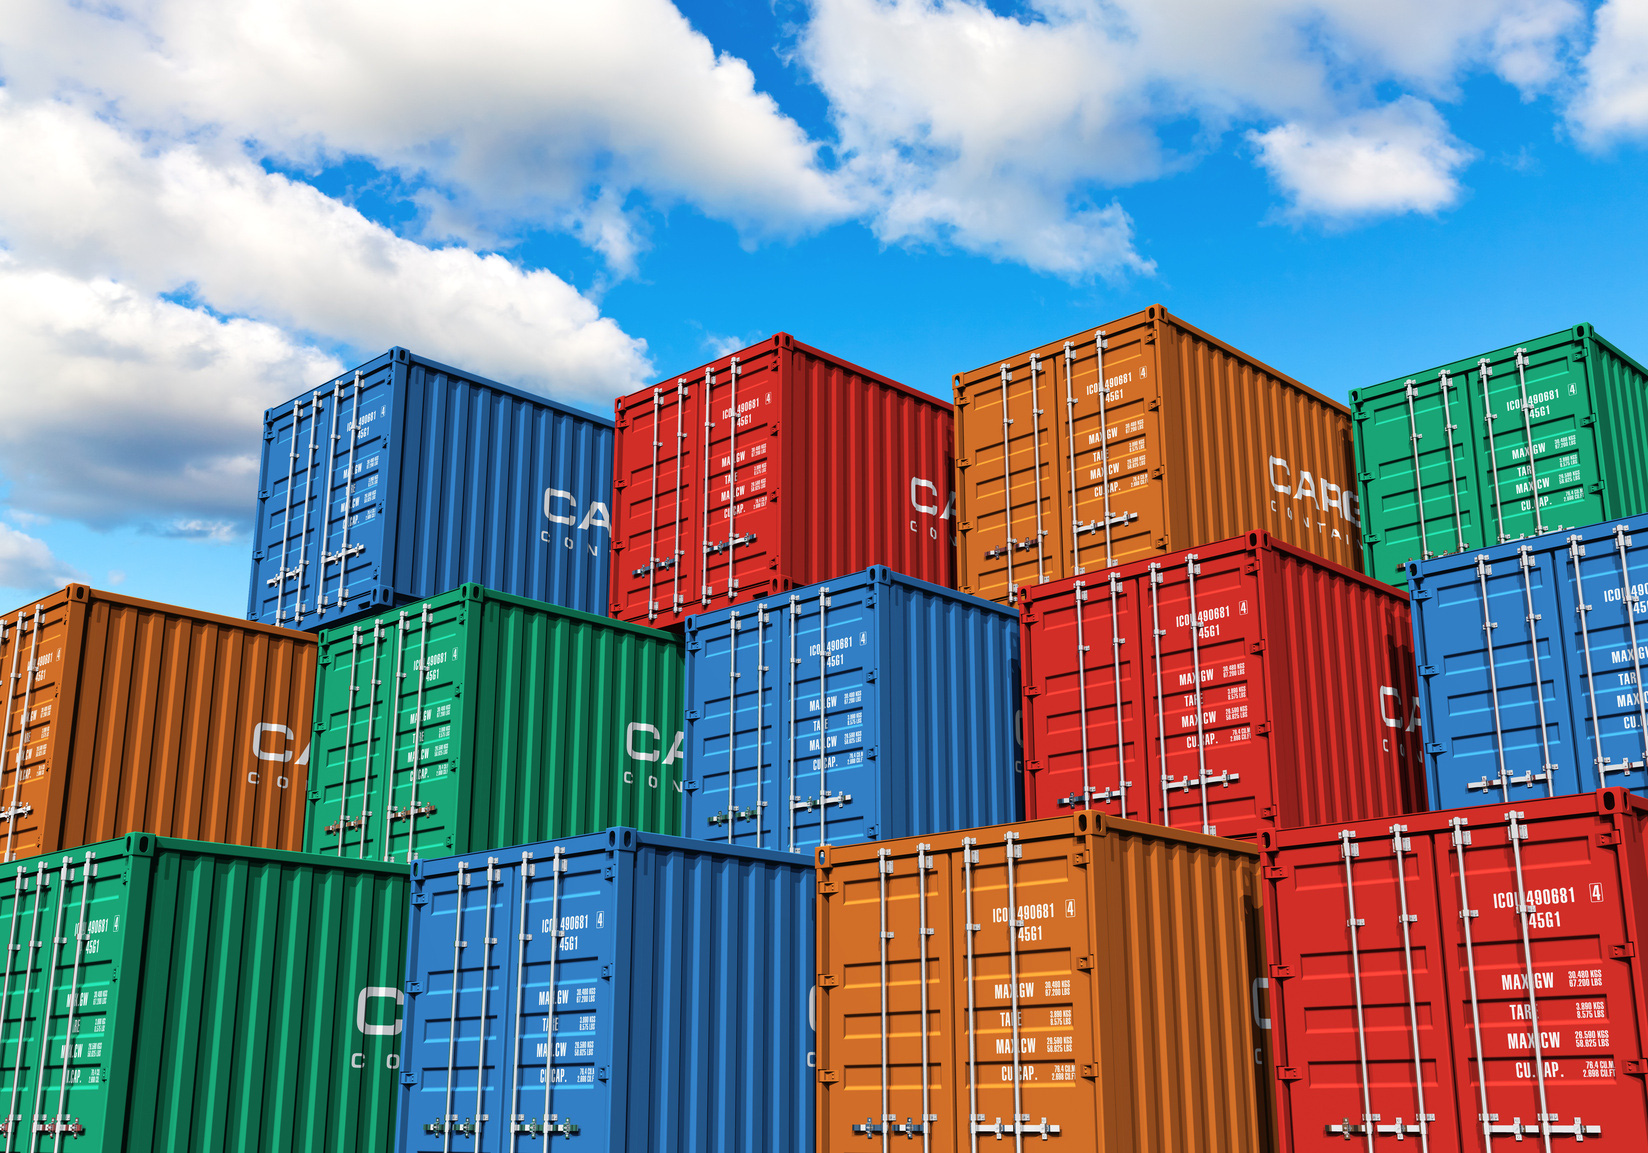 Vận tải container giảm thấp kỷ lục trong tháng 1 năm 2022